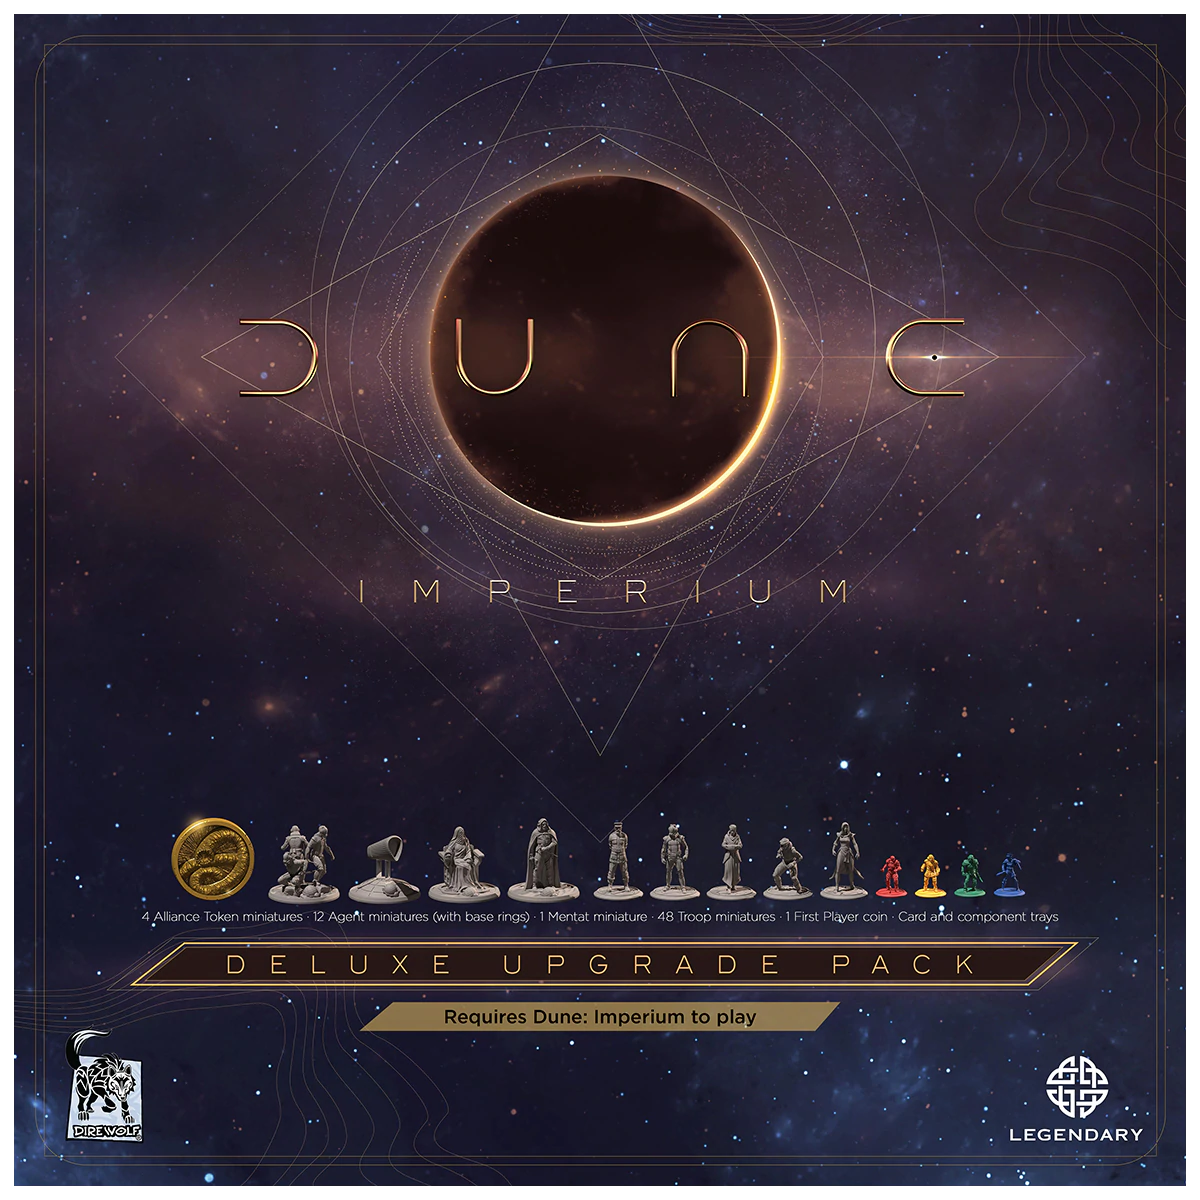 Dune: Imperium – Deluxe Upgrade Pack [1]